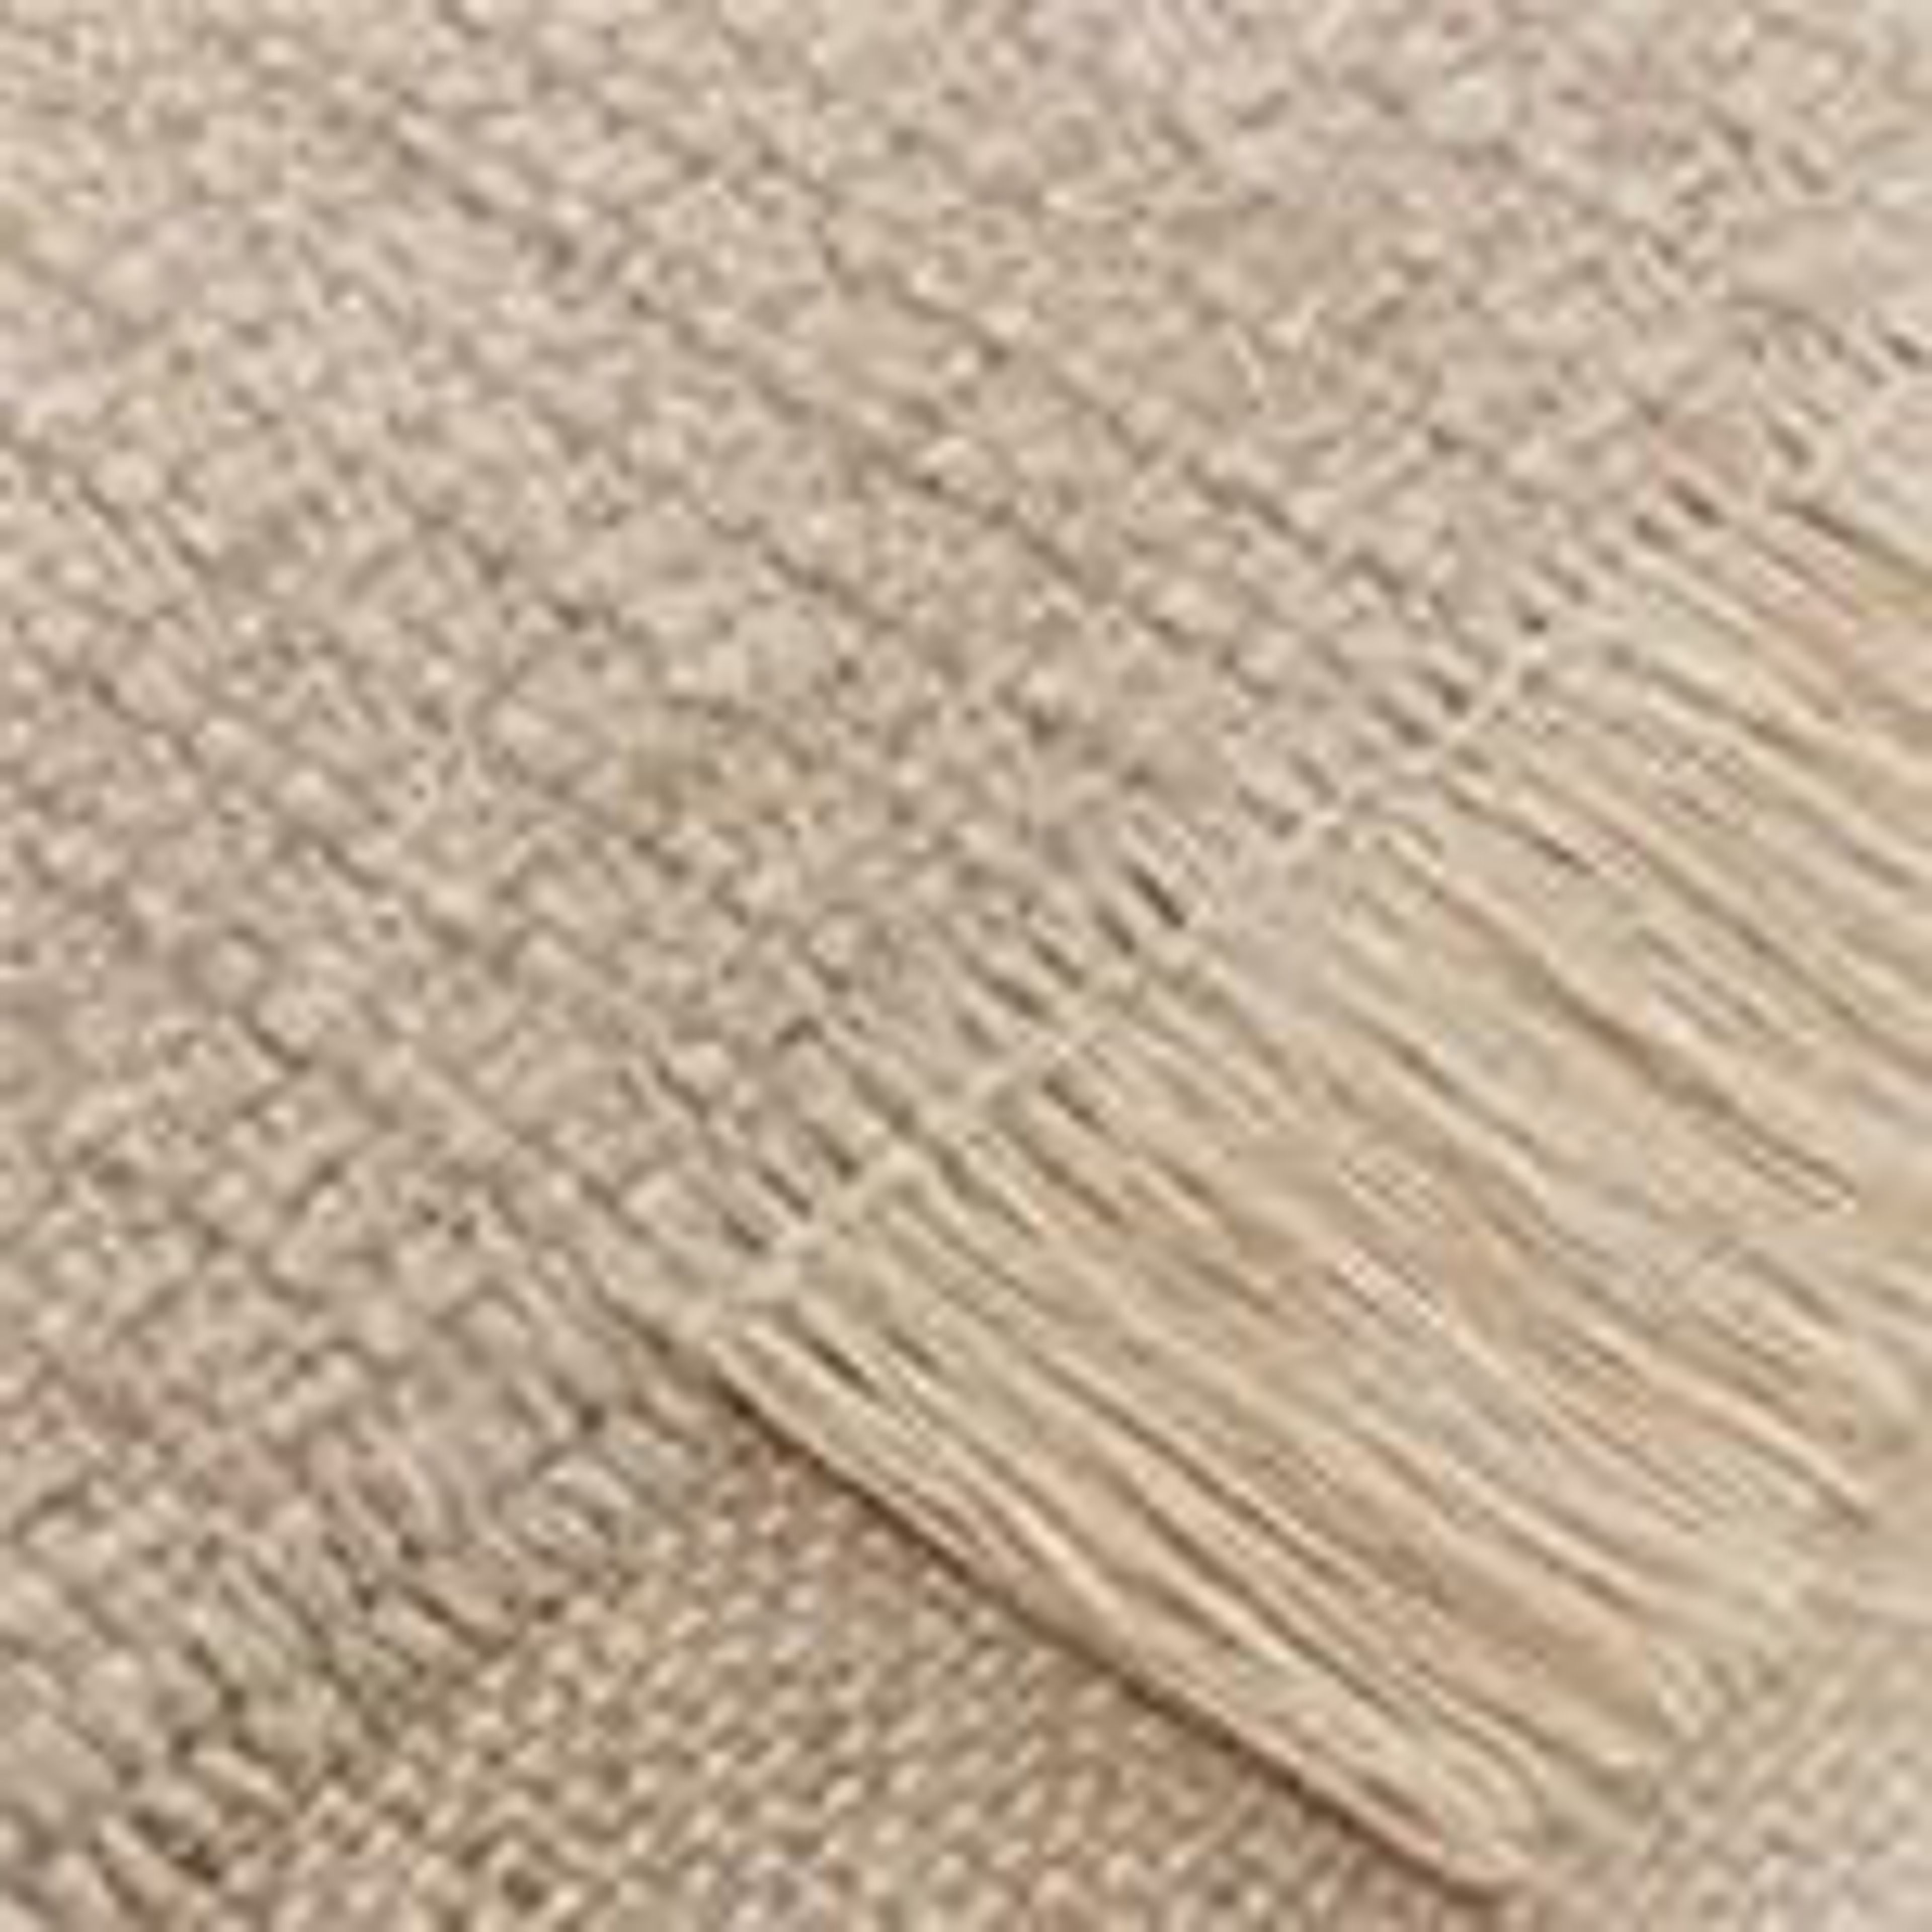 Thavar wool rug [Natural/Off-white]